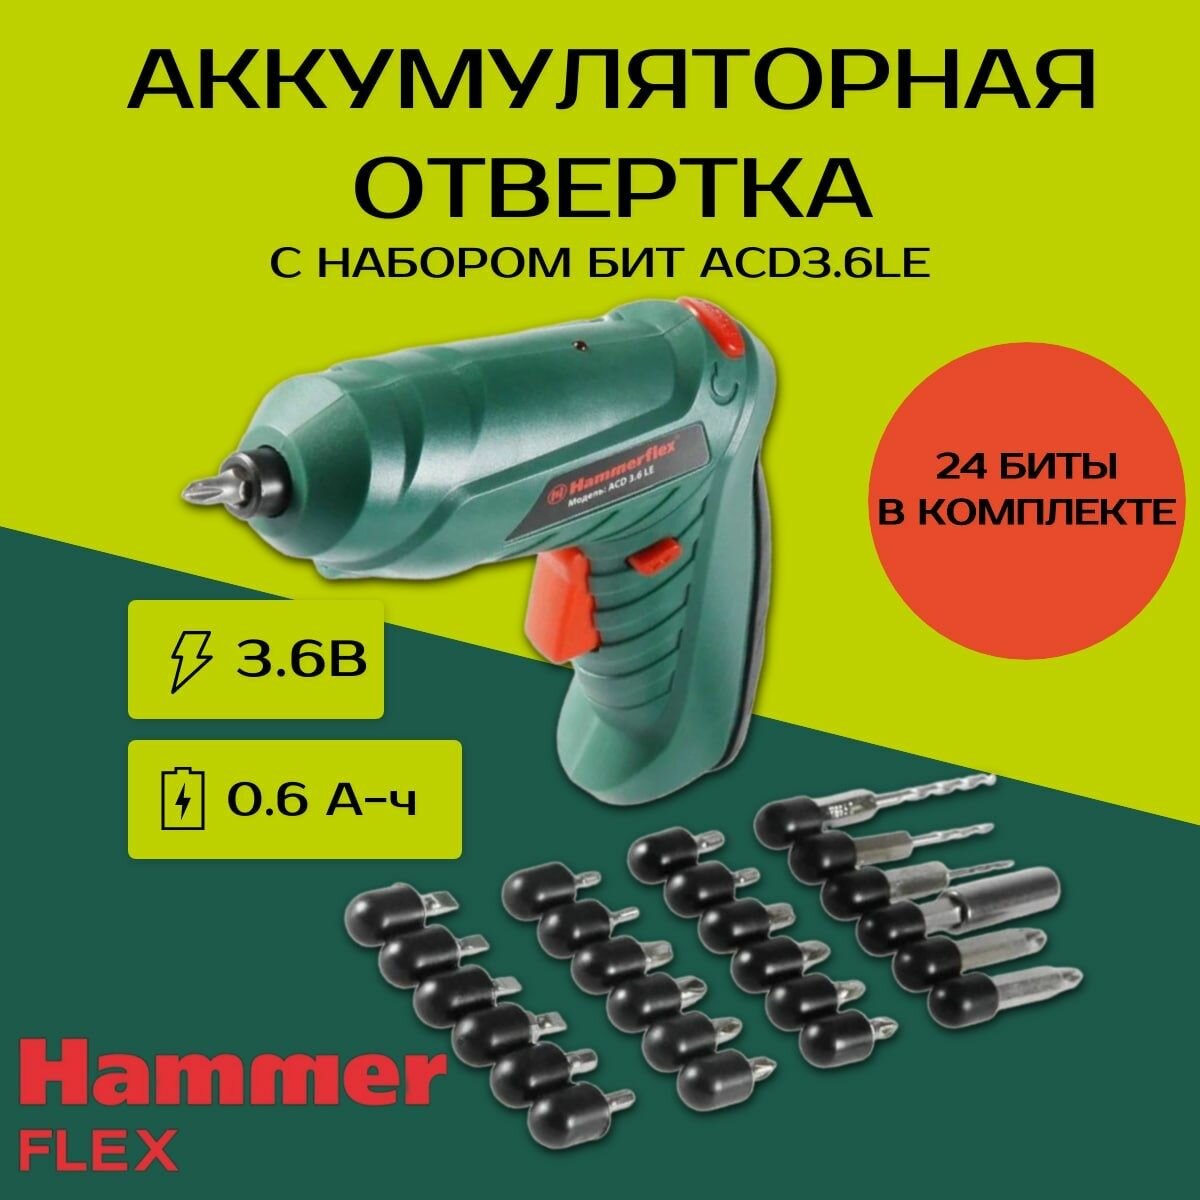 Аккумуляторная отвертка Hammer Flex ACD3.6LE